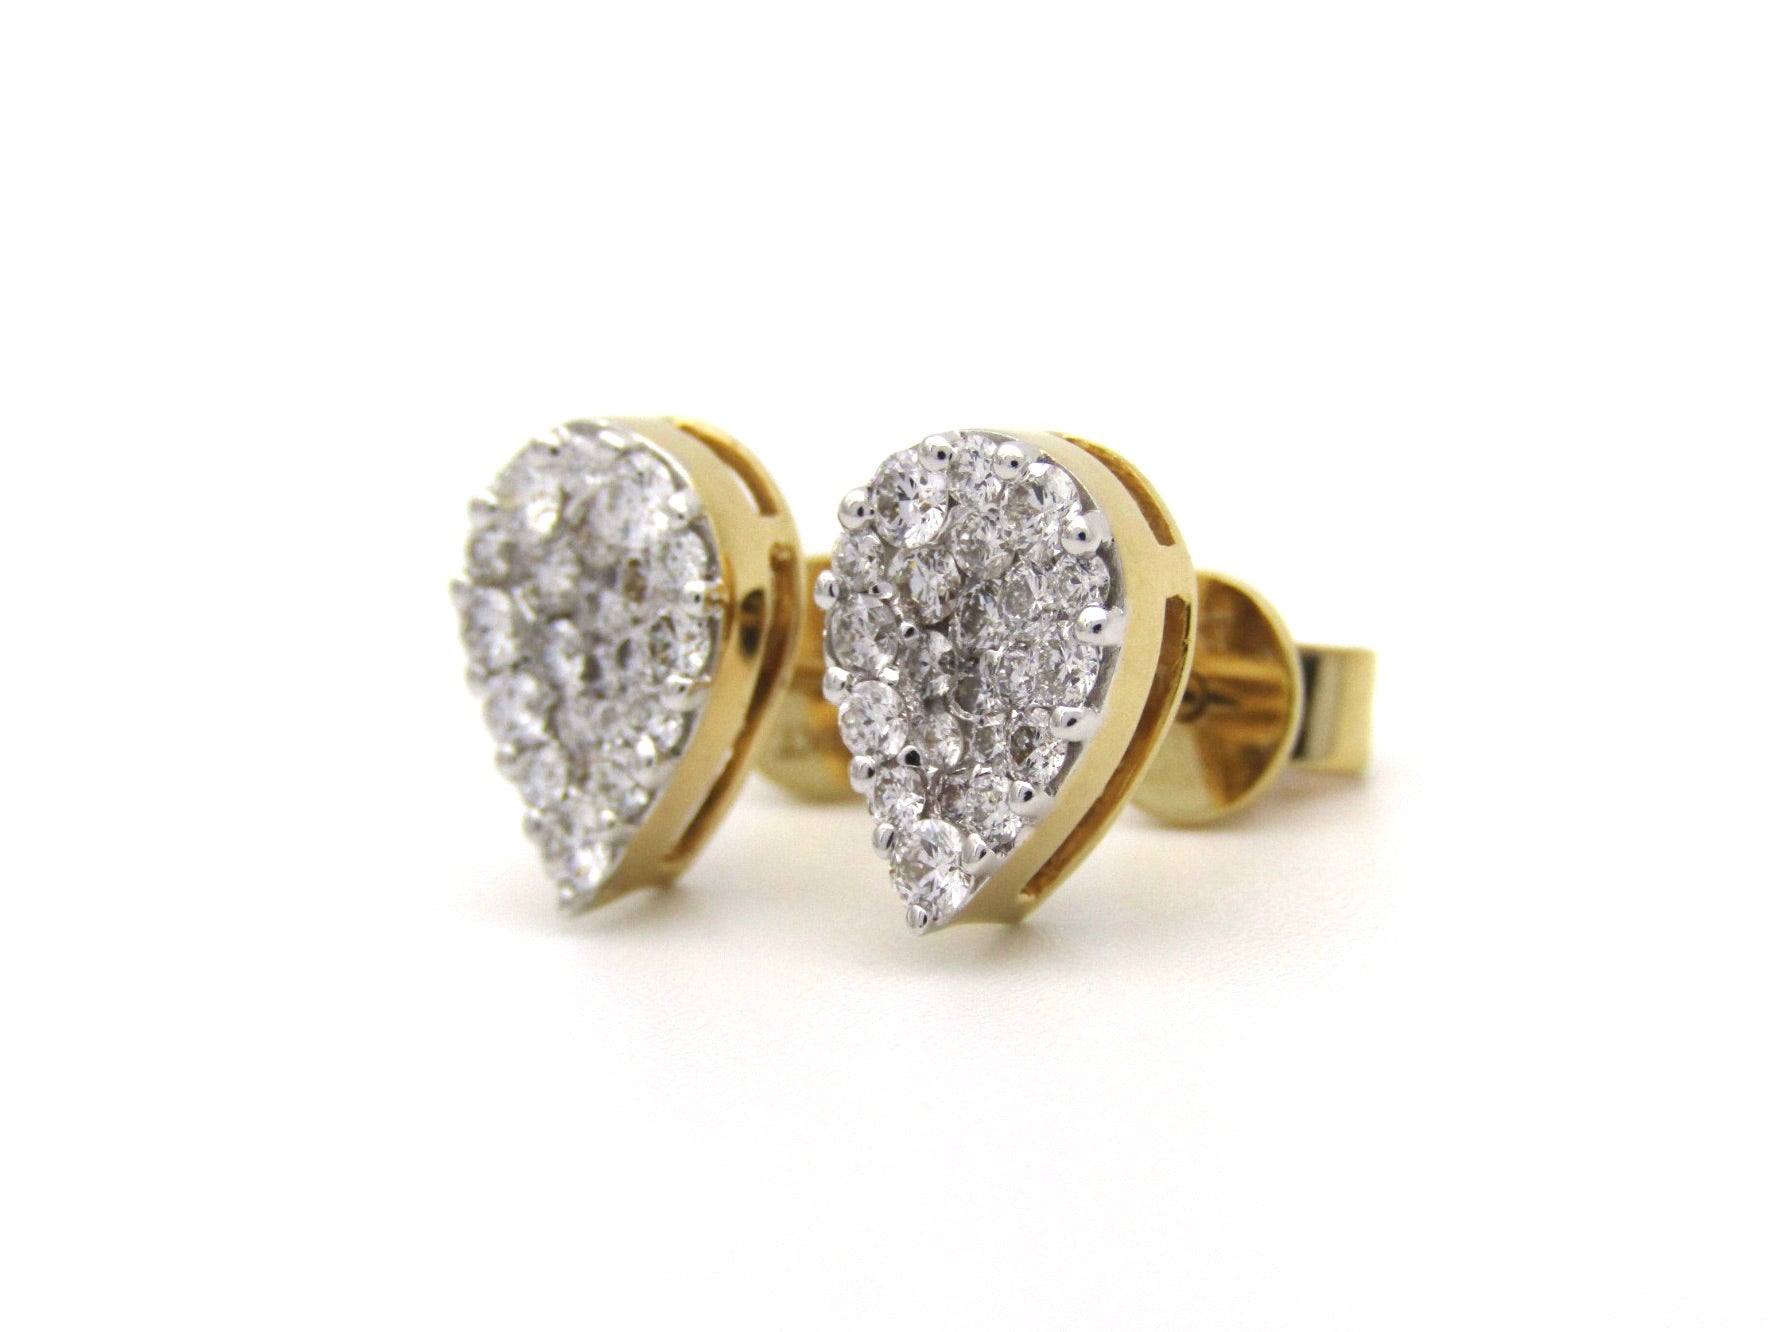 18K gold diamond cluster earrings.